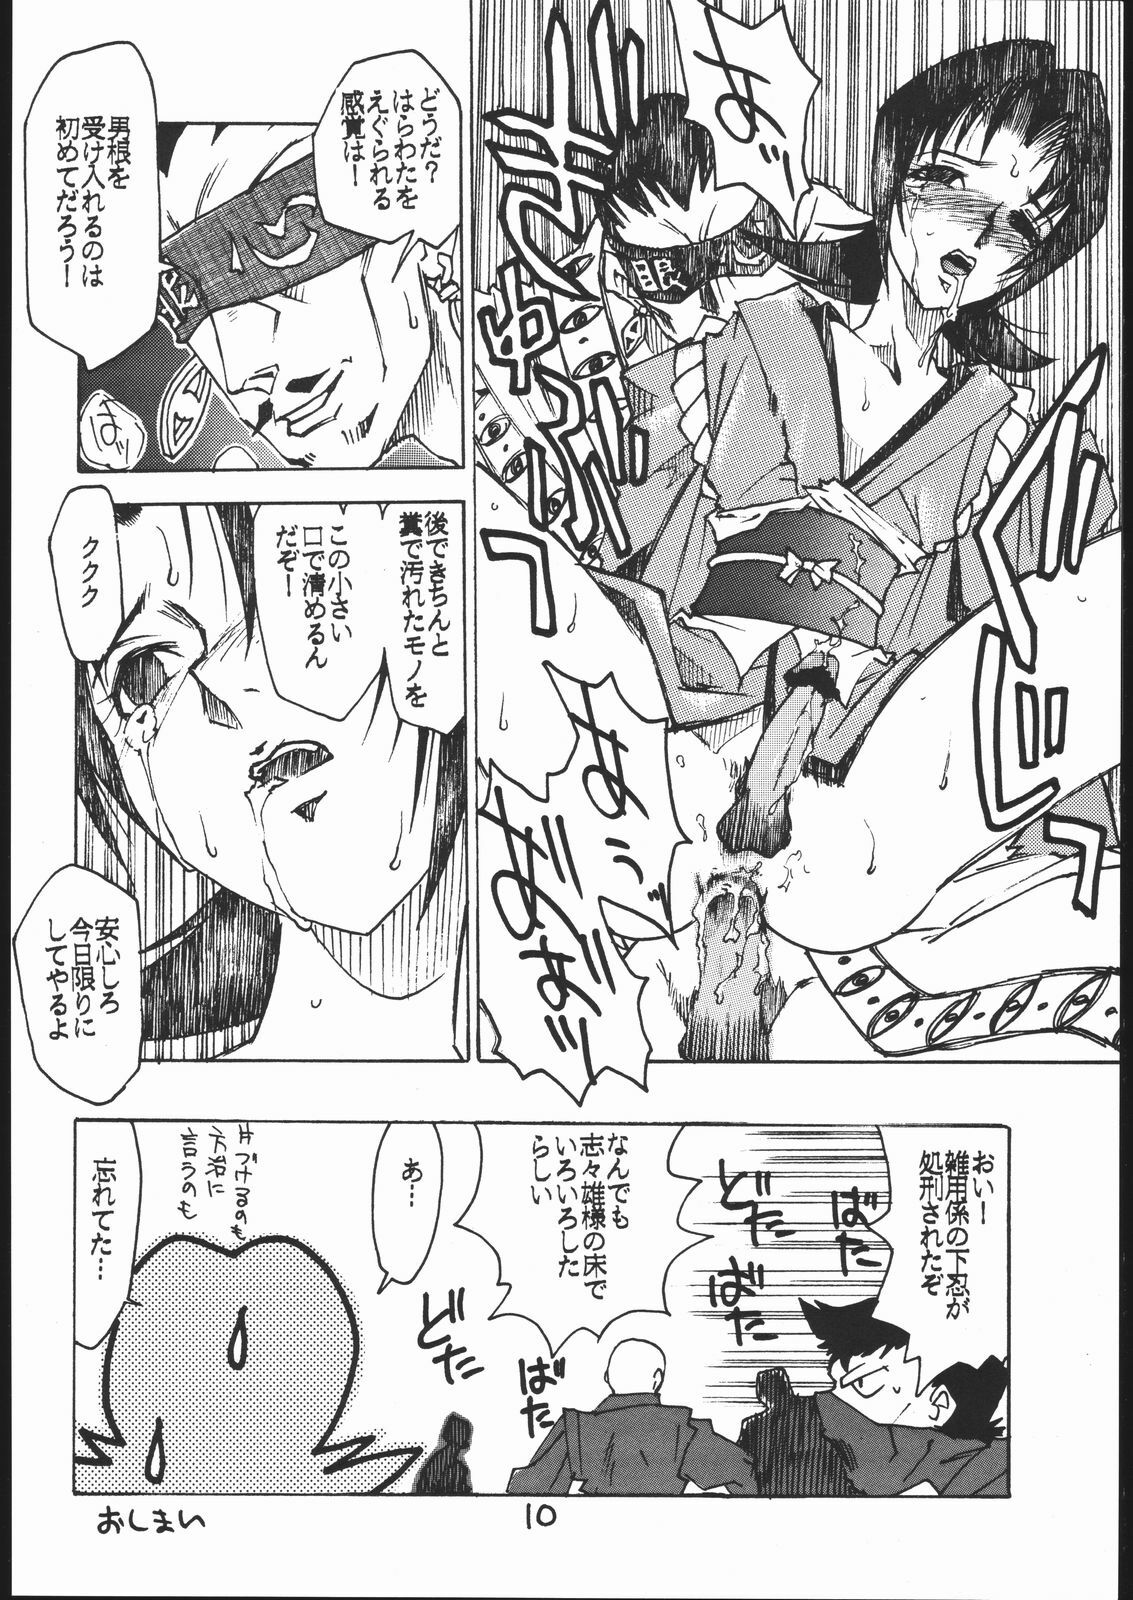 [Circle Daneko (Various)] G-MEN'97 Fuyu no Jin (Various) page 9 full